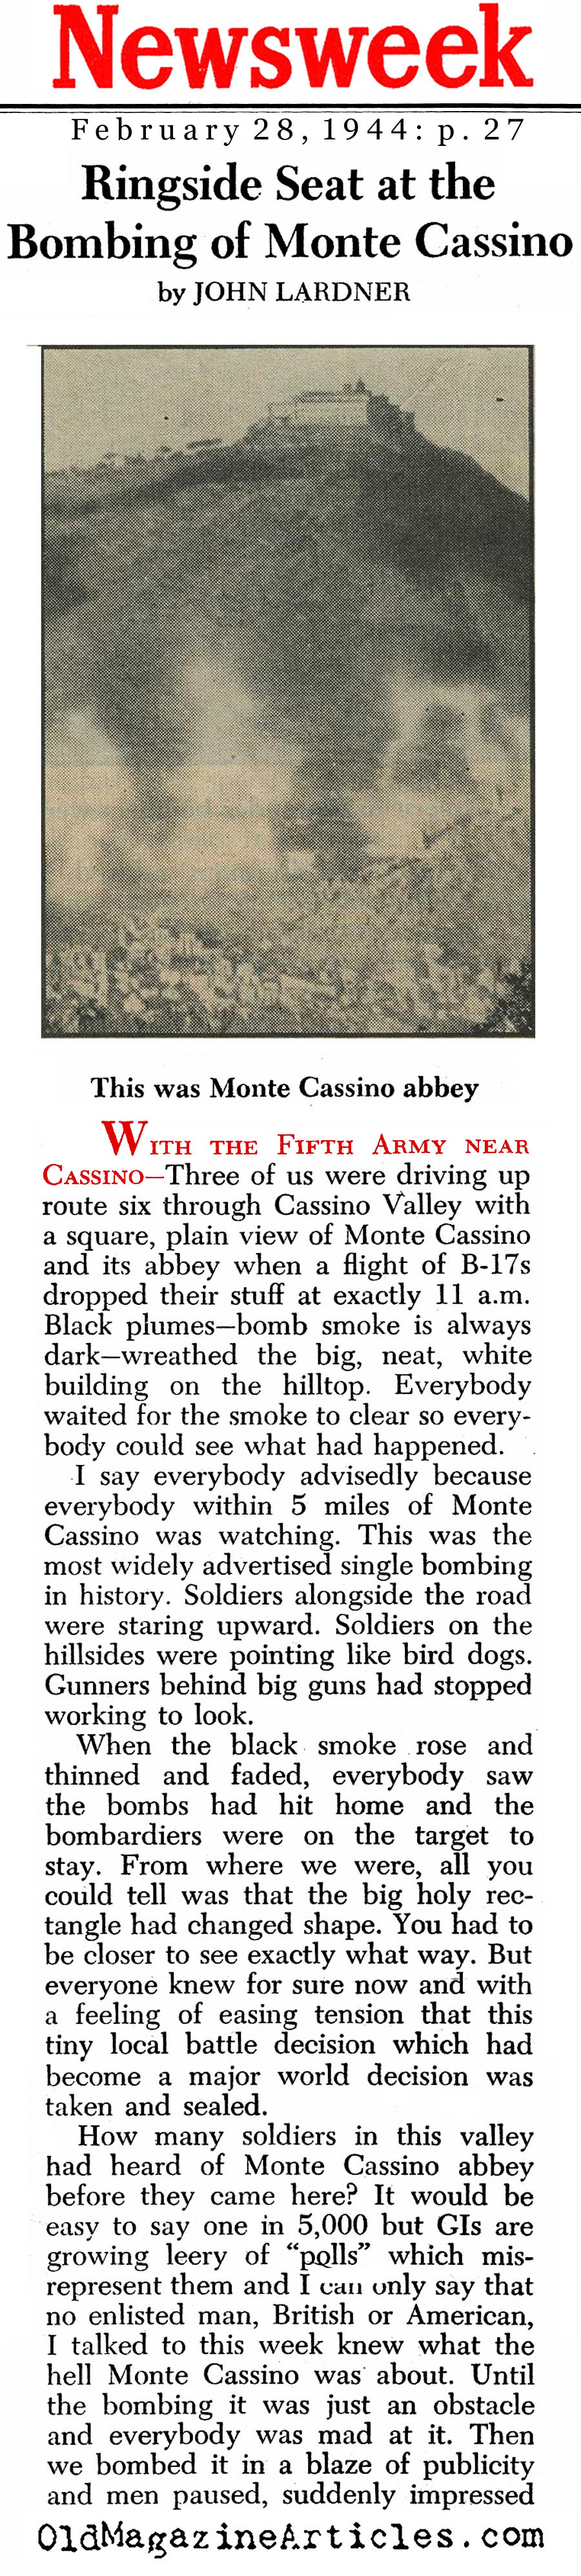 The Bombing of Monte Cassino (Newsweek Magazine, 1944)